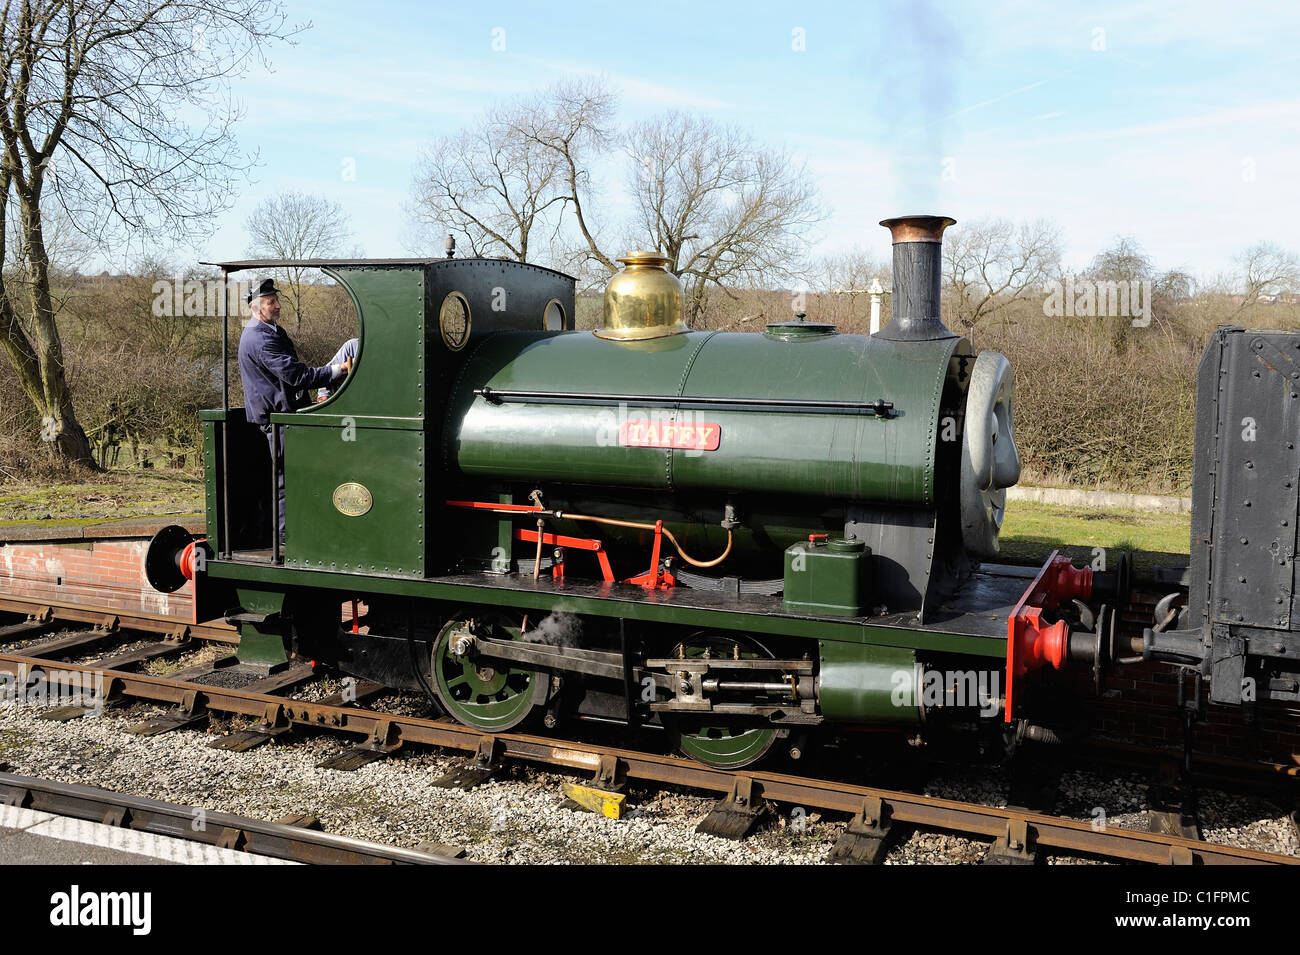 Thomas tire le réservoir du moteur open day centre ferroviaire intérieur Derbyshire, Angleterre, Royaume-Uni Banque D'Images